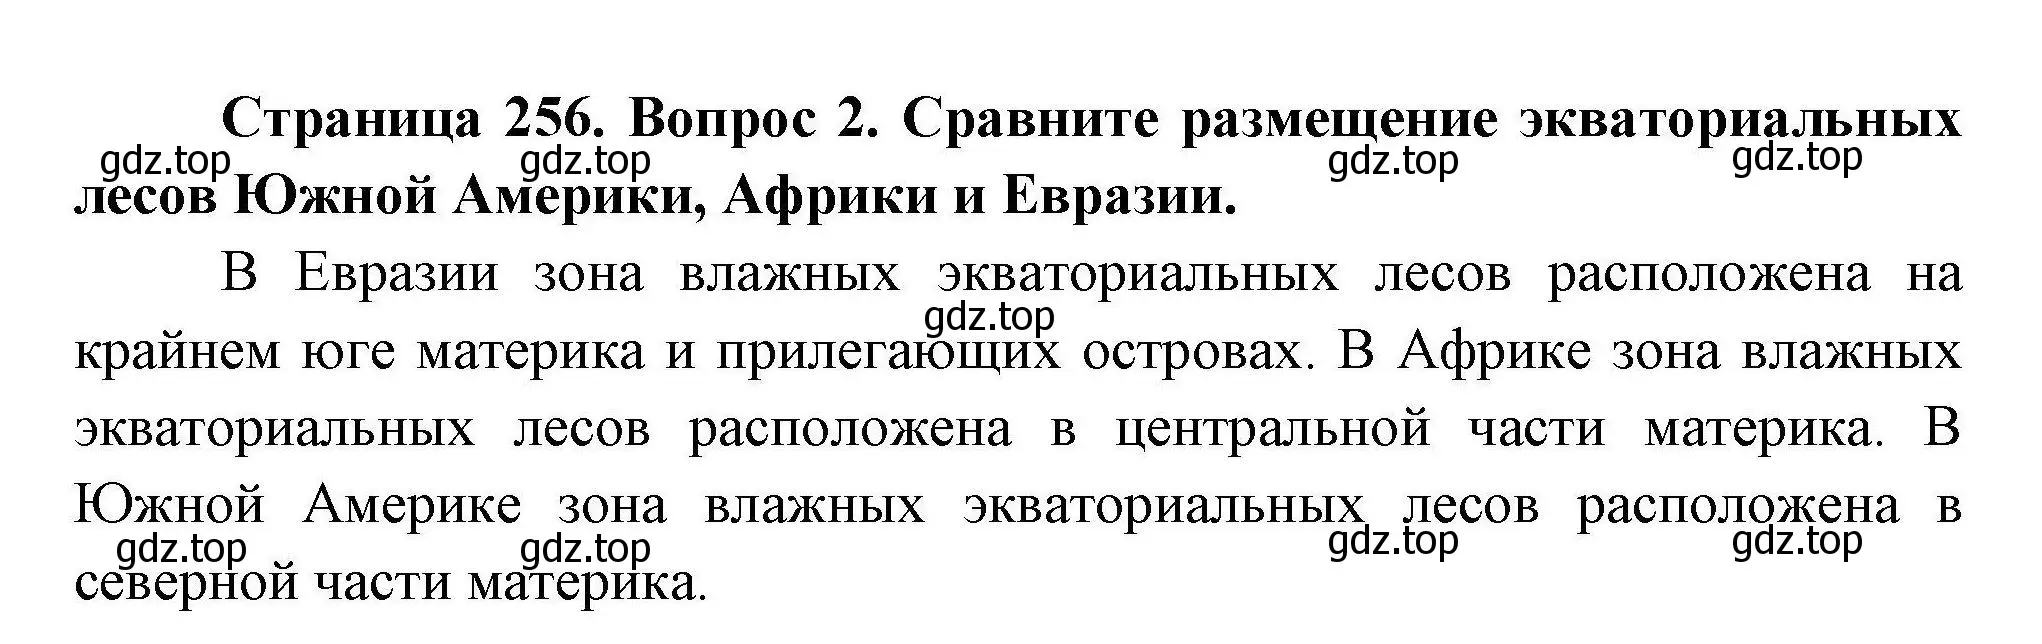 Решение  ☆(5) (страница 256) гдз по географии 7 класс Коринская, Душина, учебник